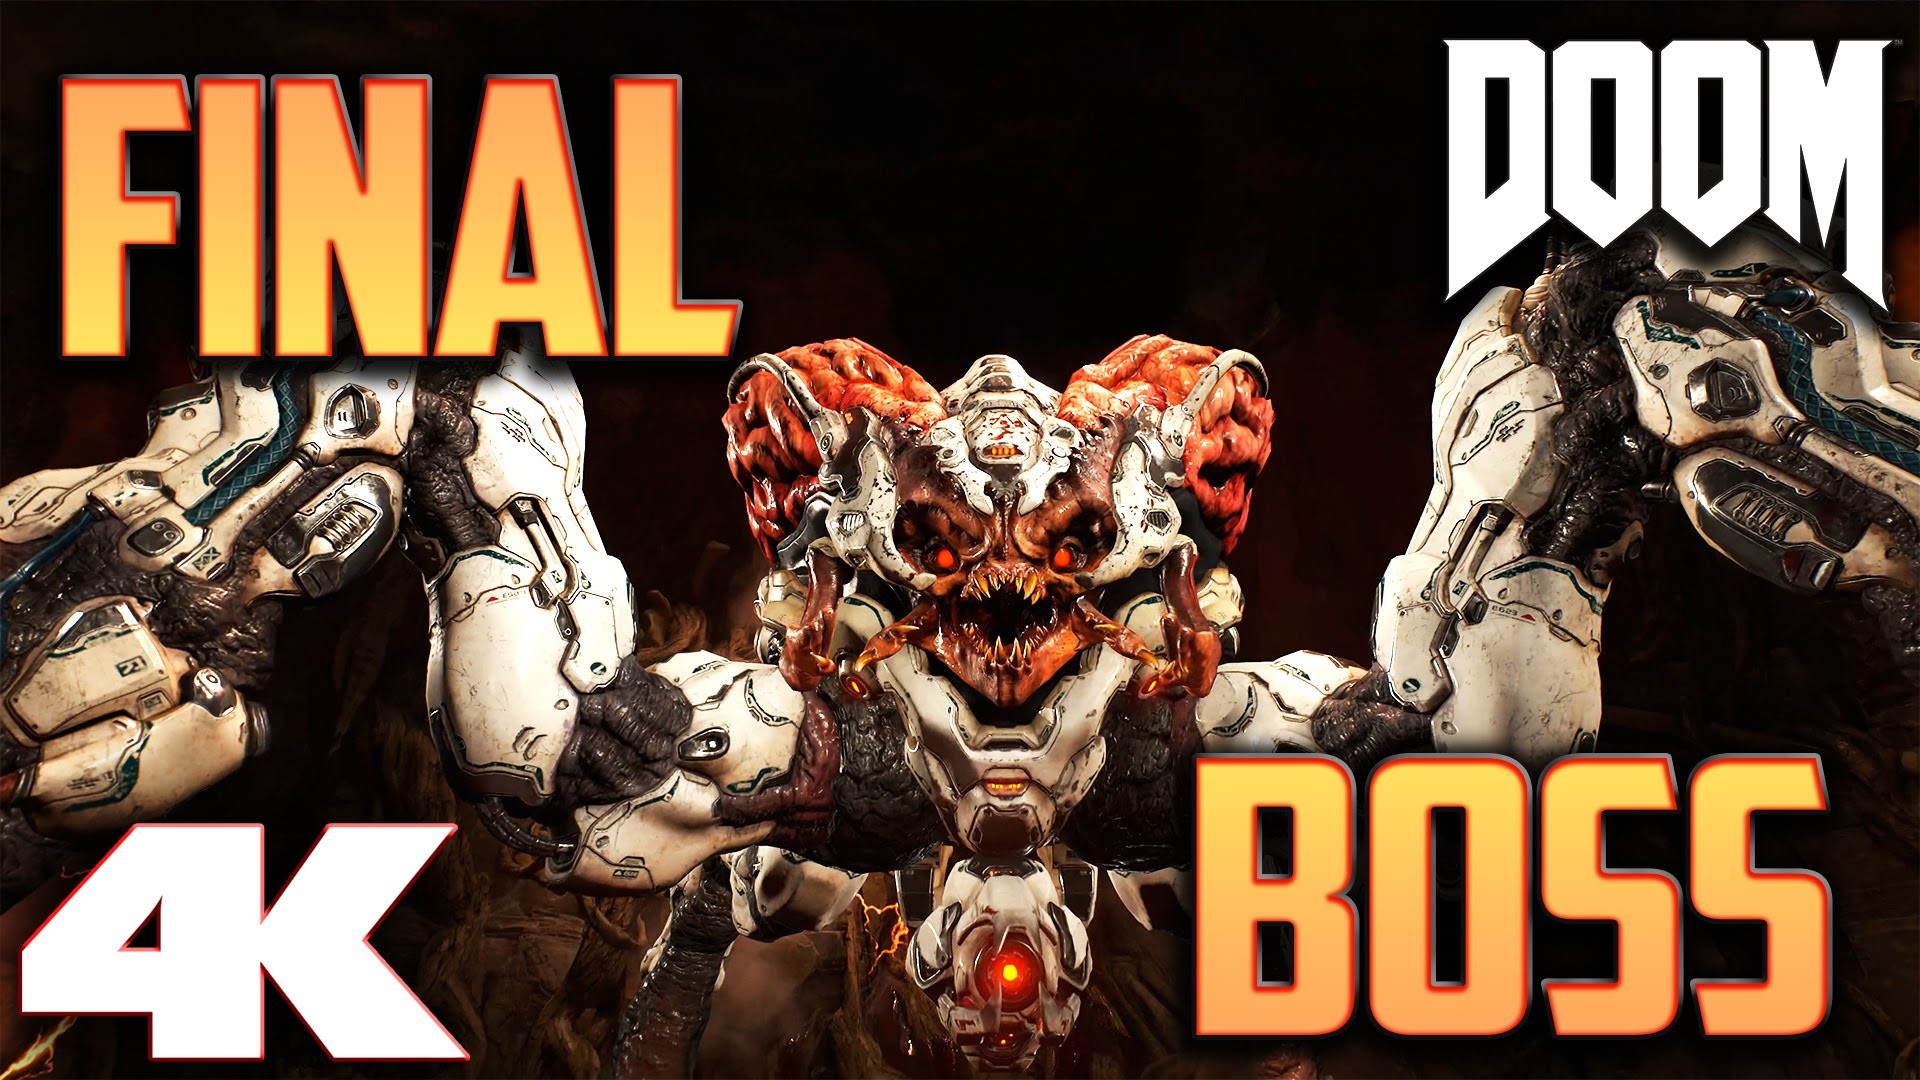 1920x1080 DOOM 2016 - Final Boss Battle - 4K ULTRA Settings